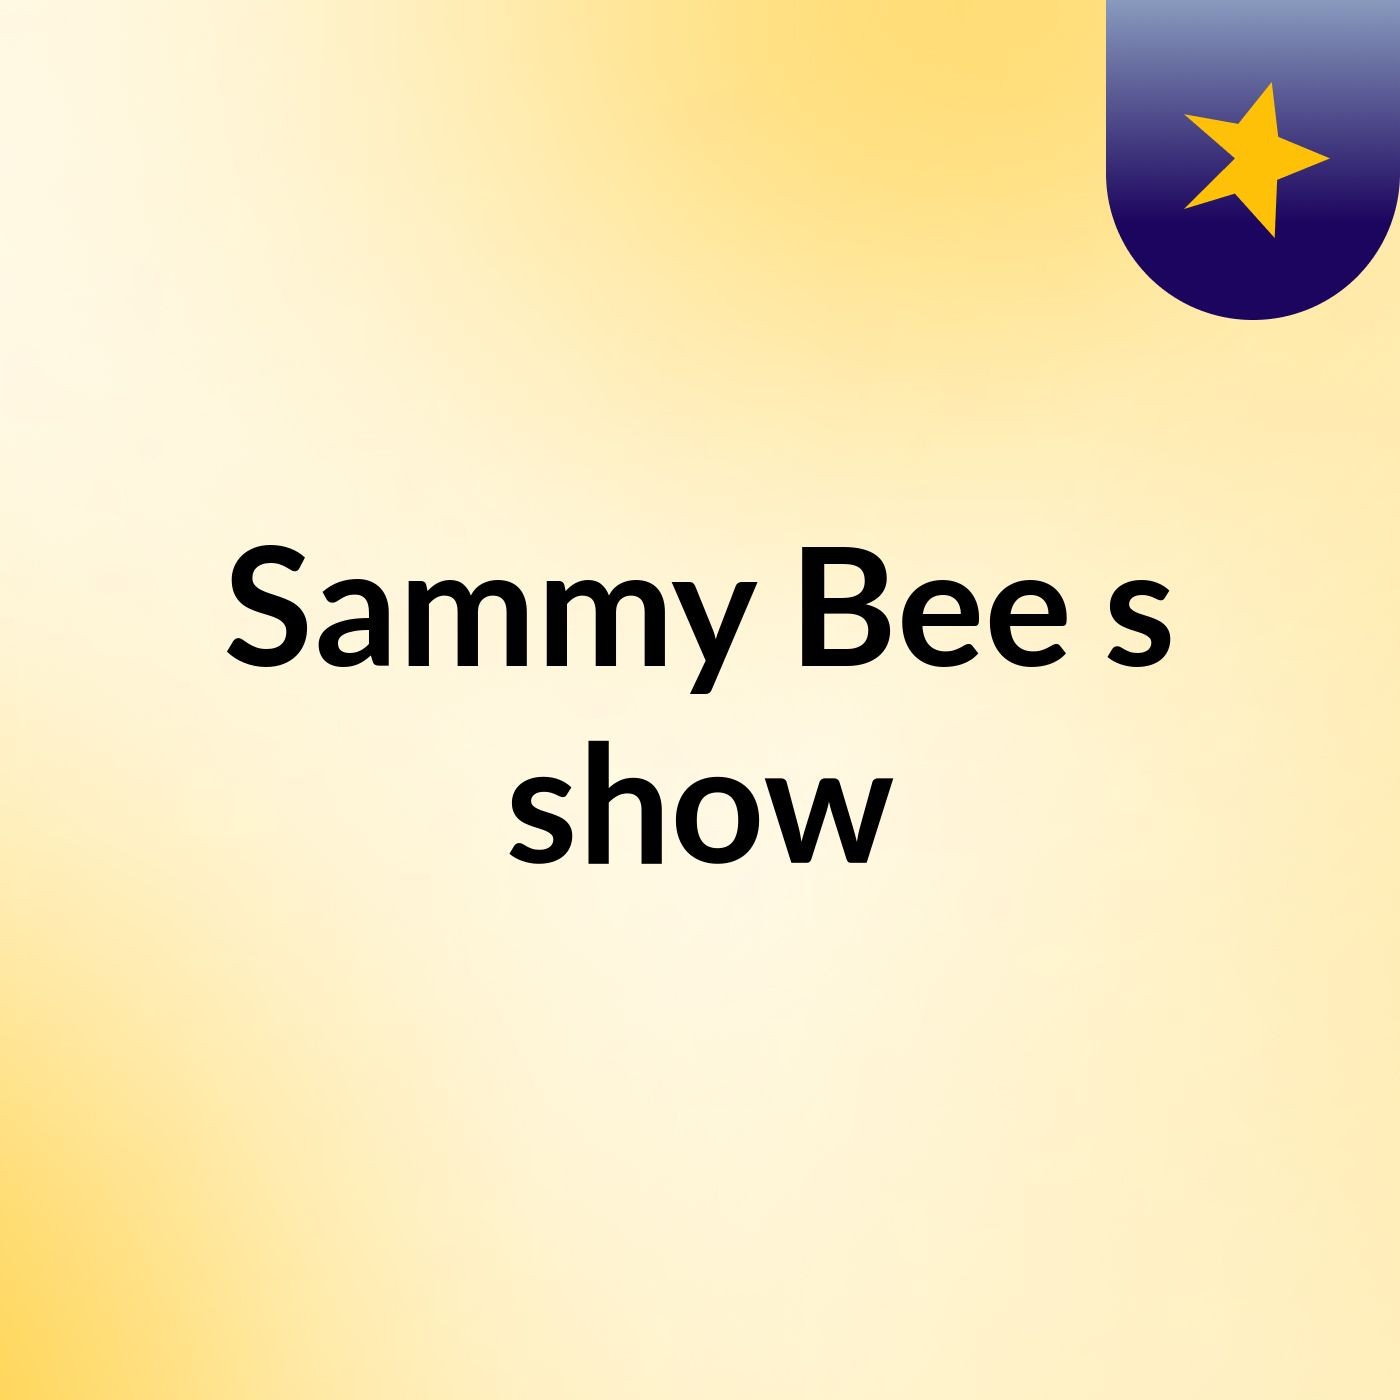 Sammy Bee's show